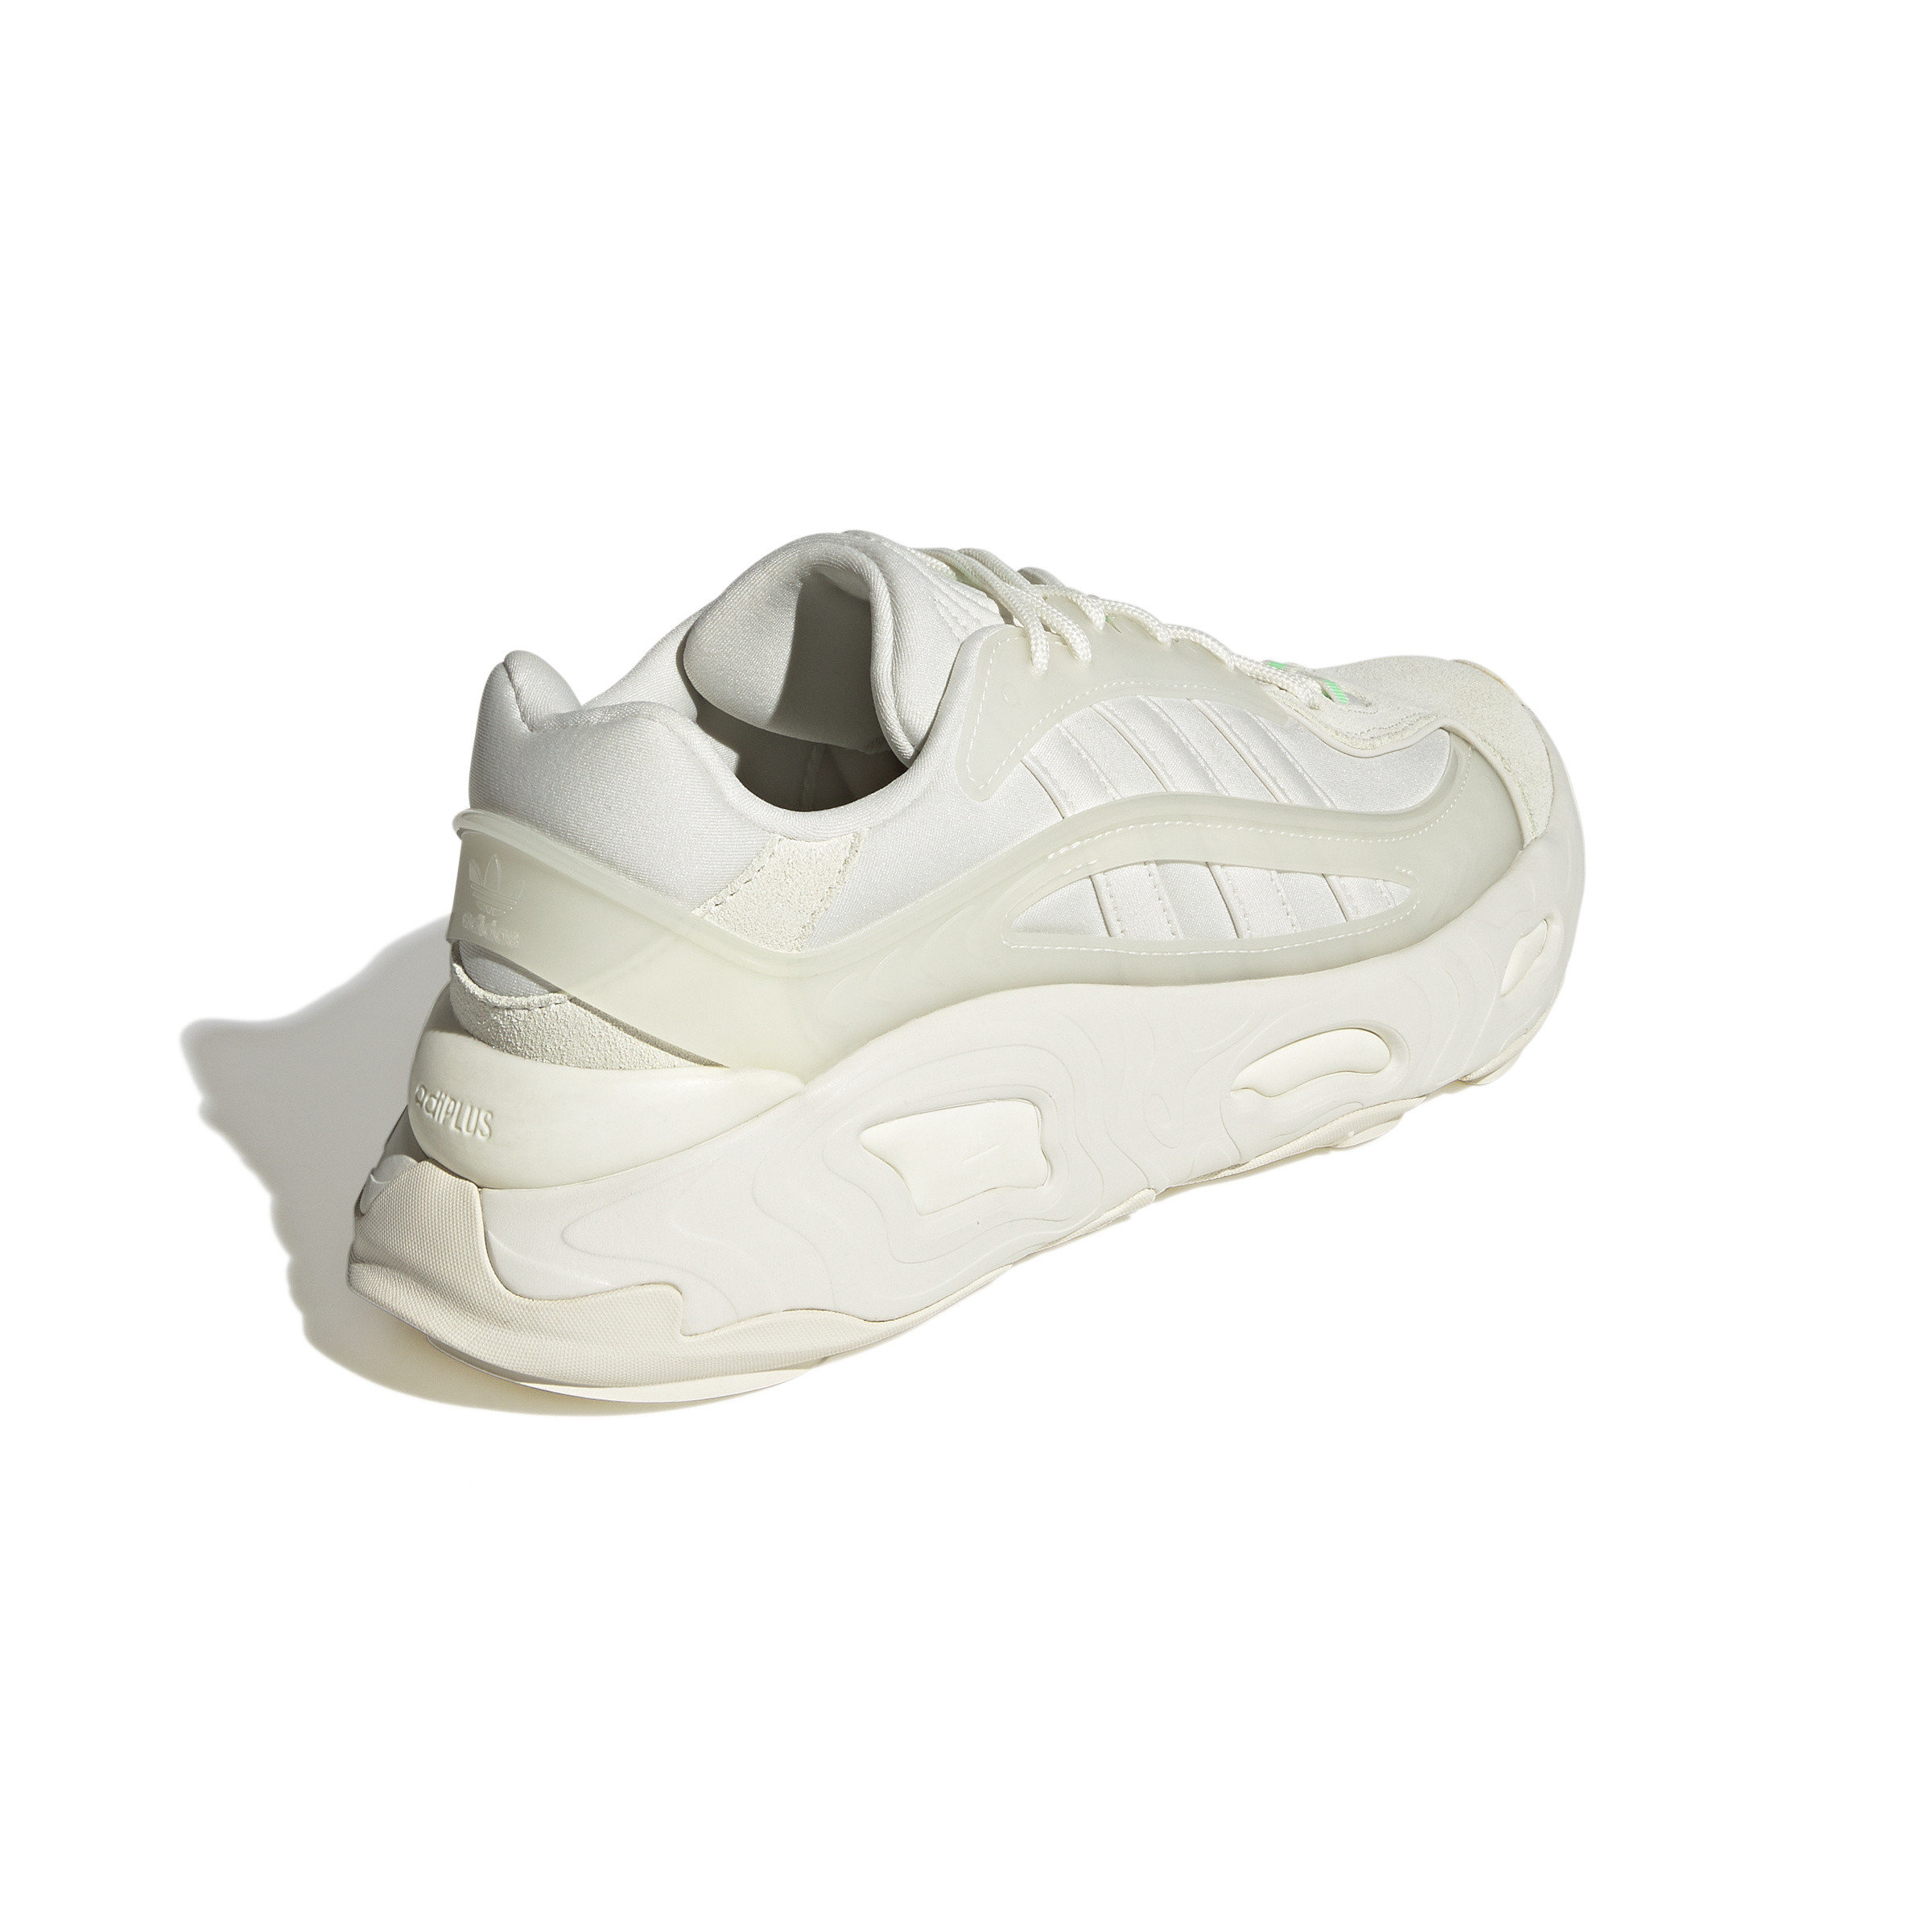 Adidas - Scarpe Oznova, Bianco, large image number 5